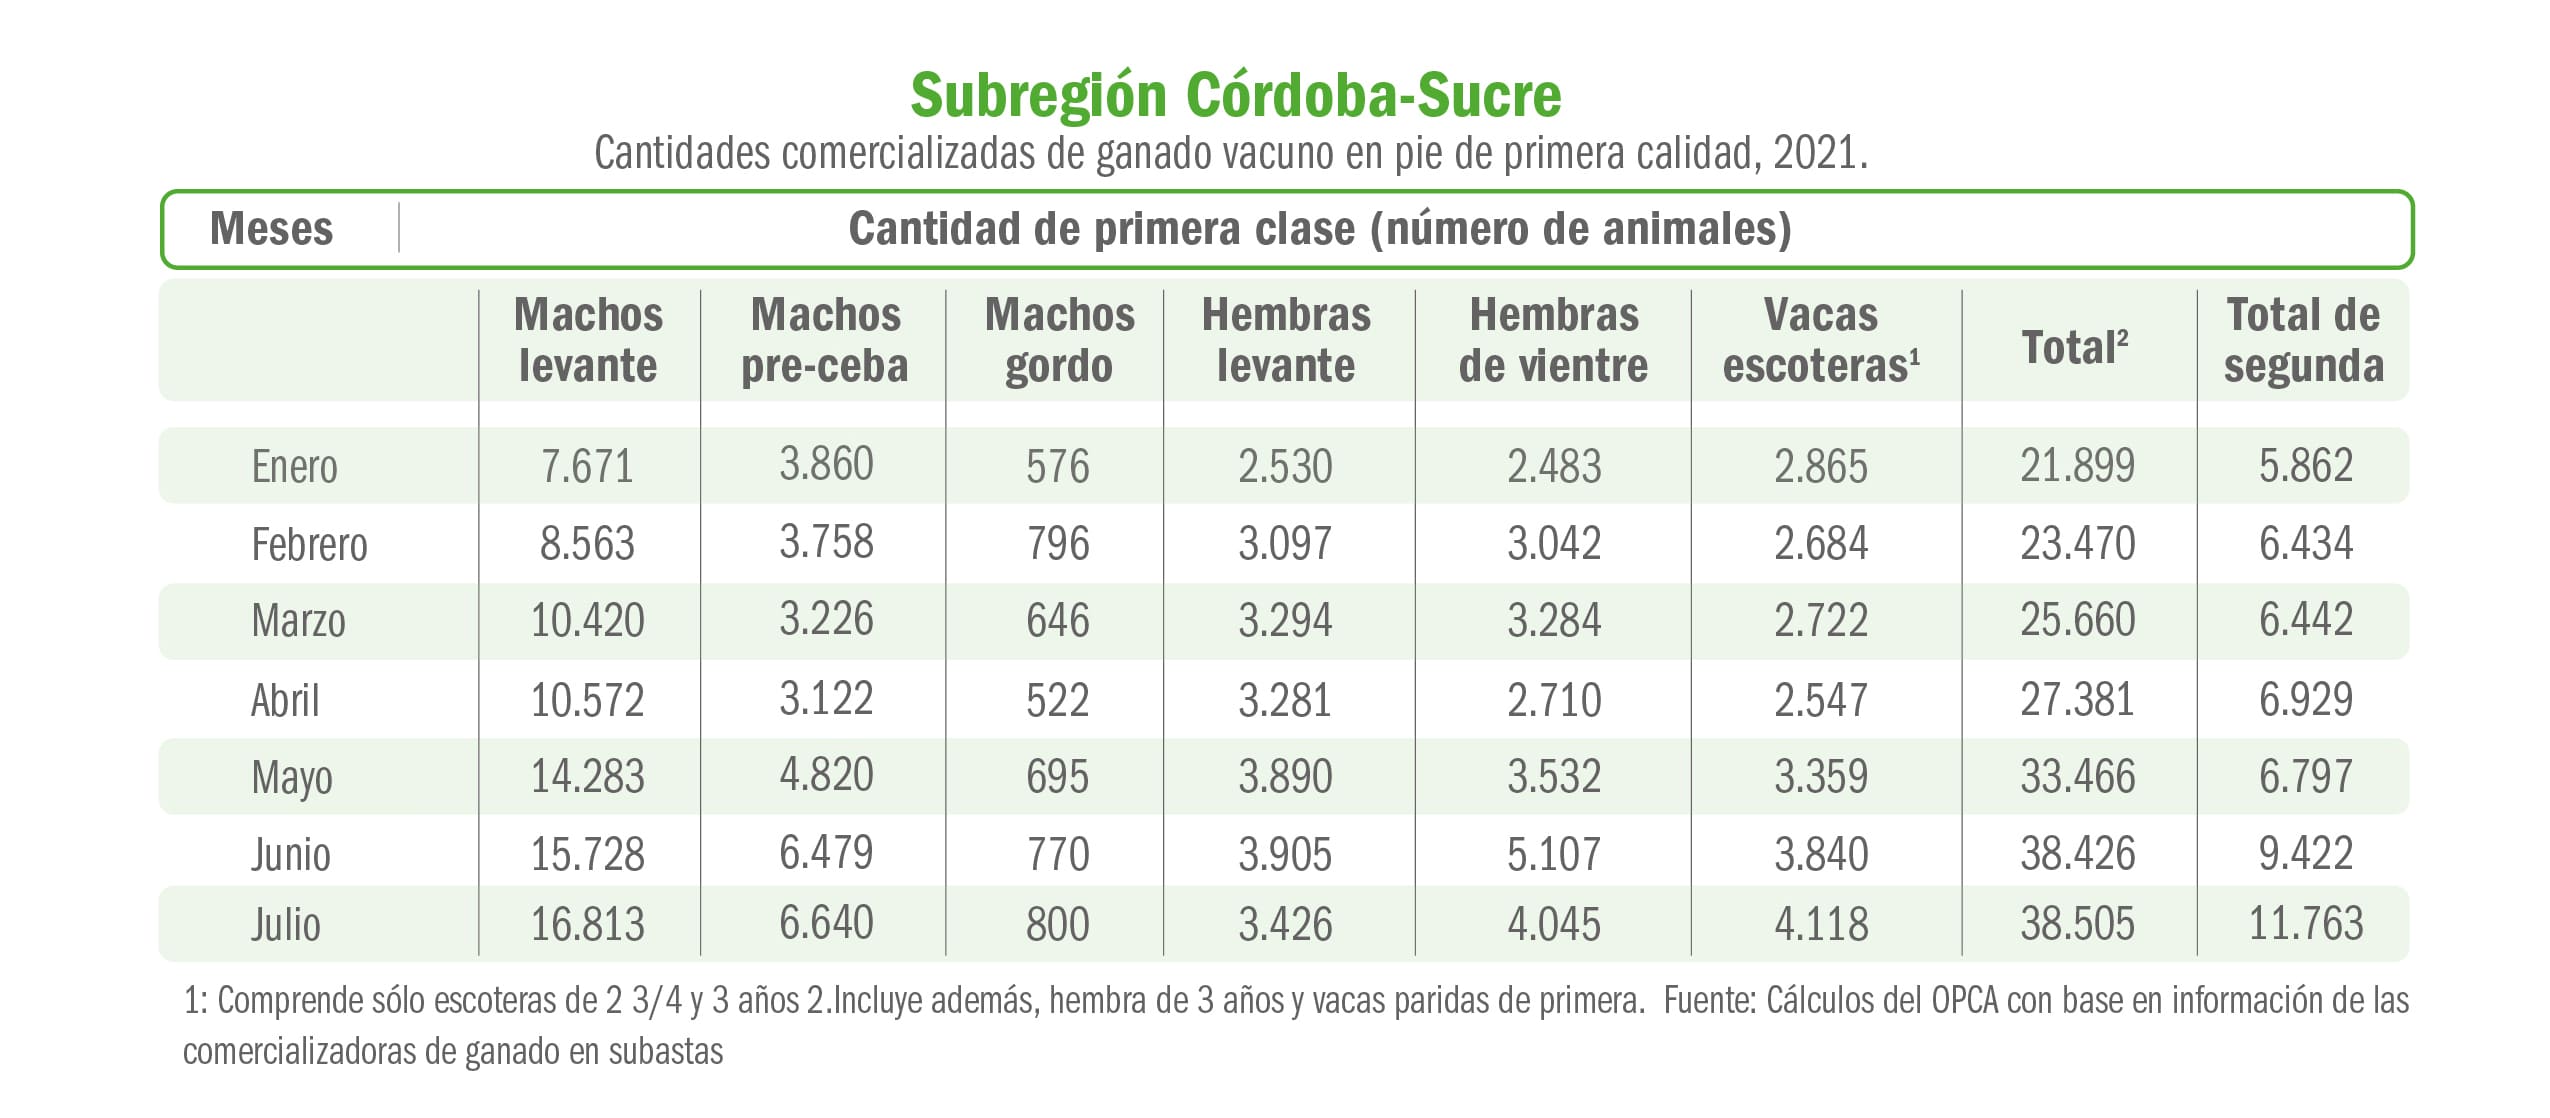 Sigue el buen momento del precio del ganado en Córdoba y Sucre Fedegán